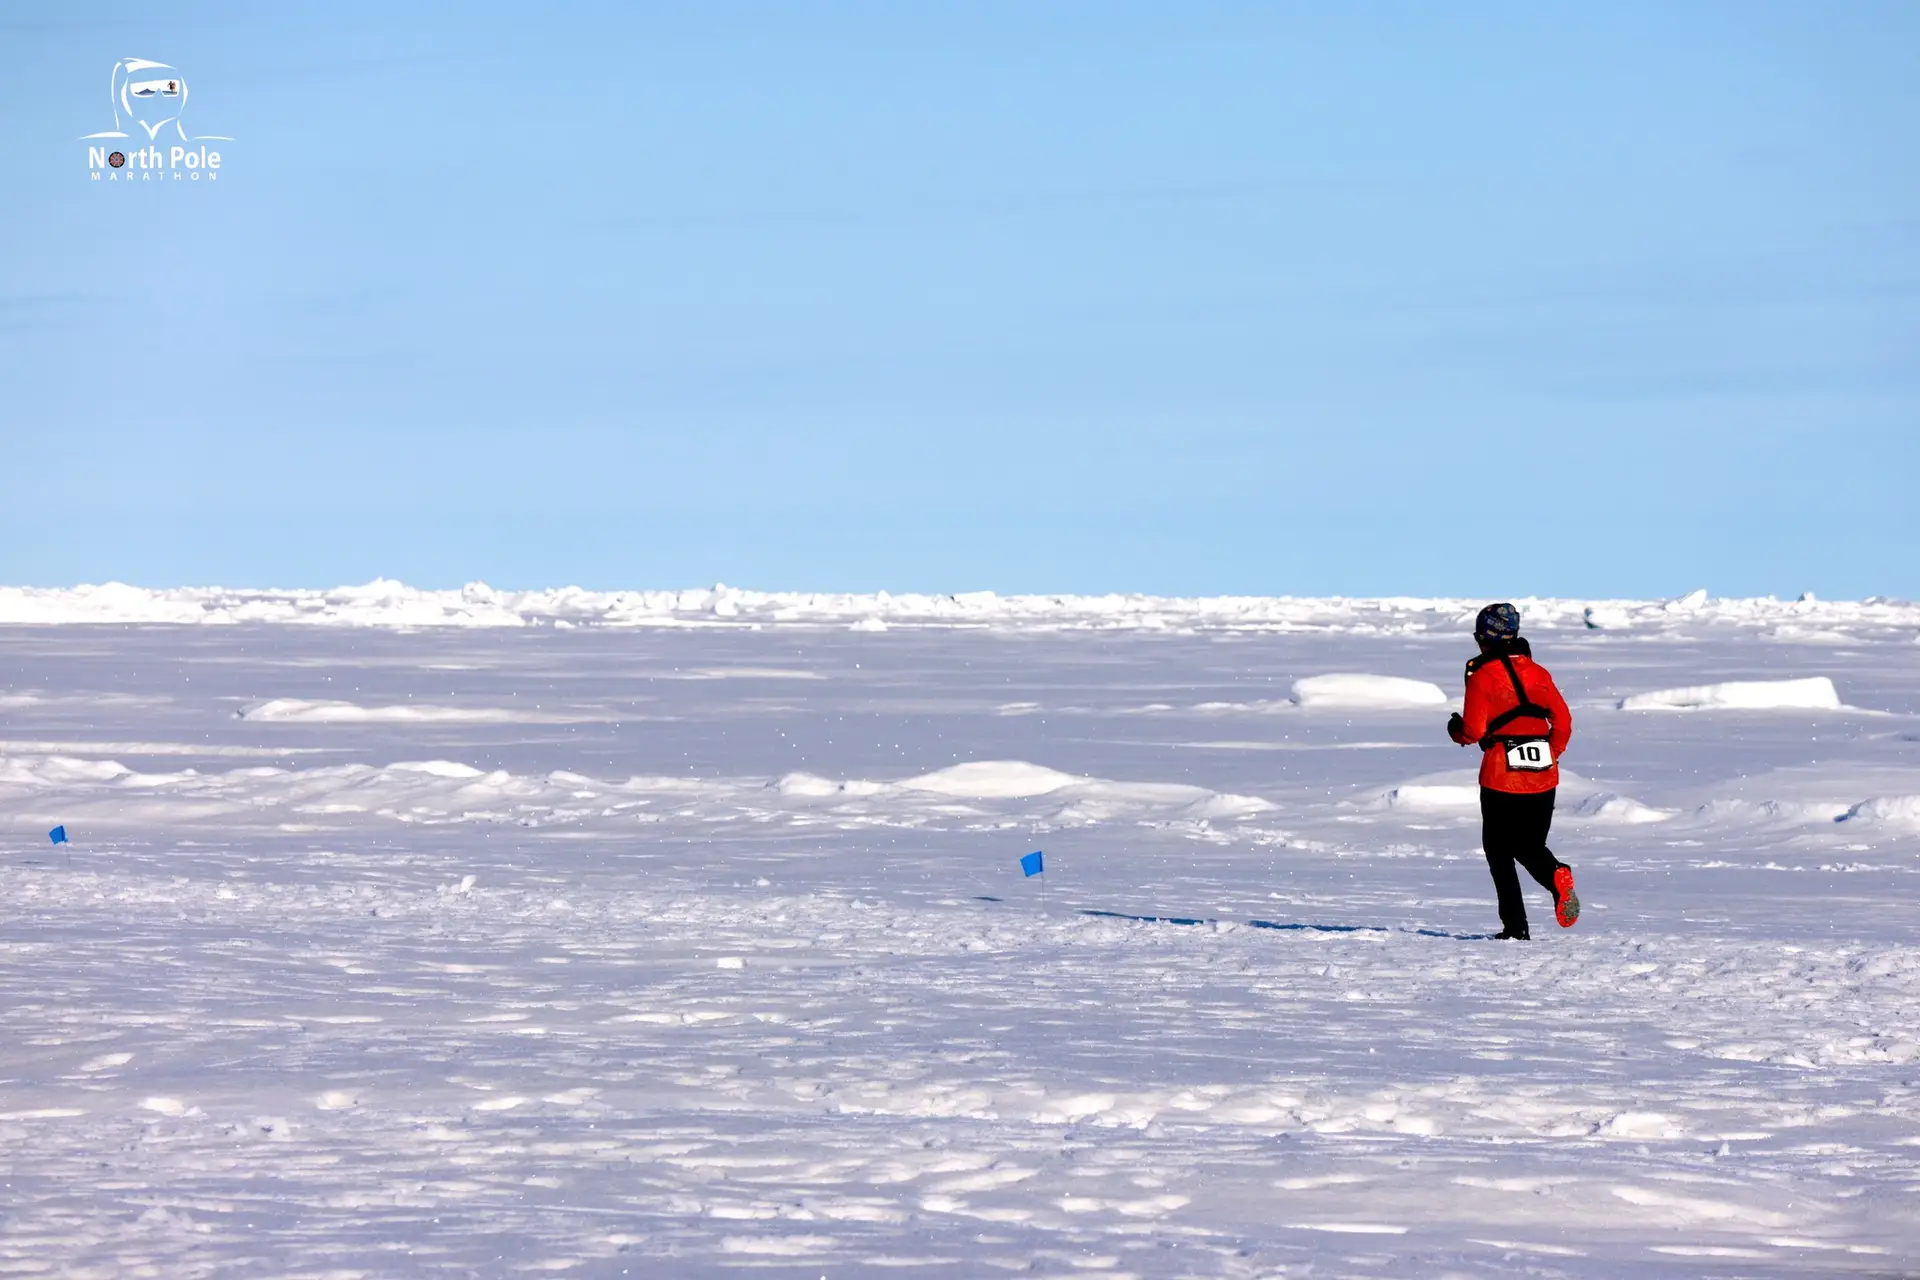 Maratona do Polo Norte realizou-se pela primeira vez no verão